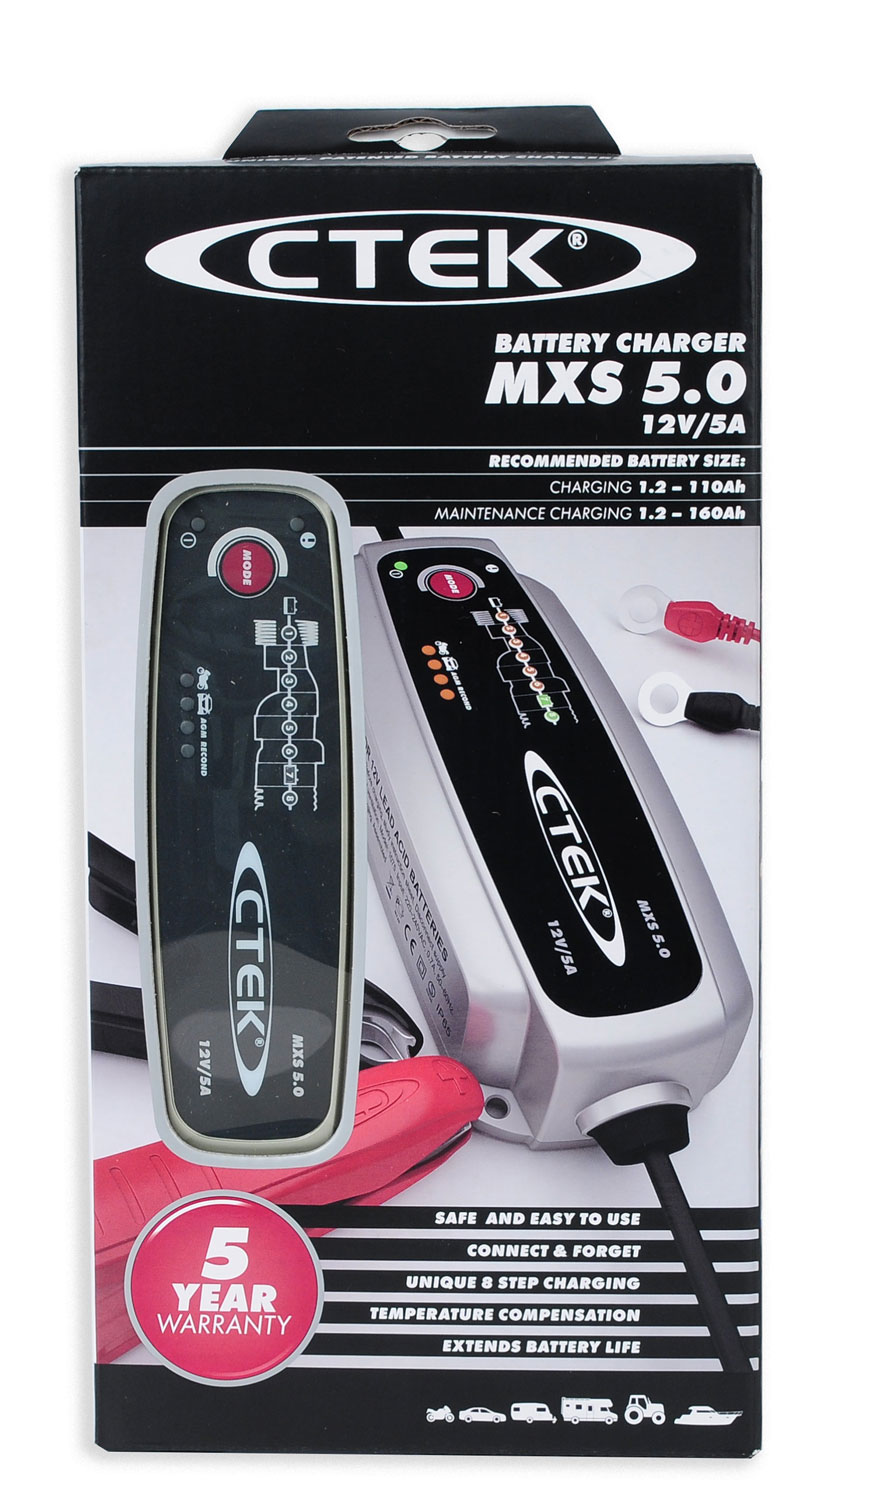 Ctek MXS 5.0 Batterieladegerät 12 V 0.8A/5A, Laden bis 110 Ah,Erhalten bis 160Ah